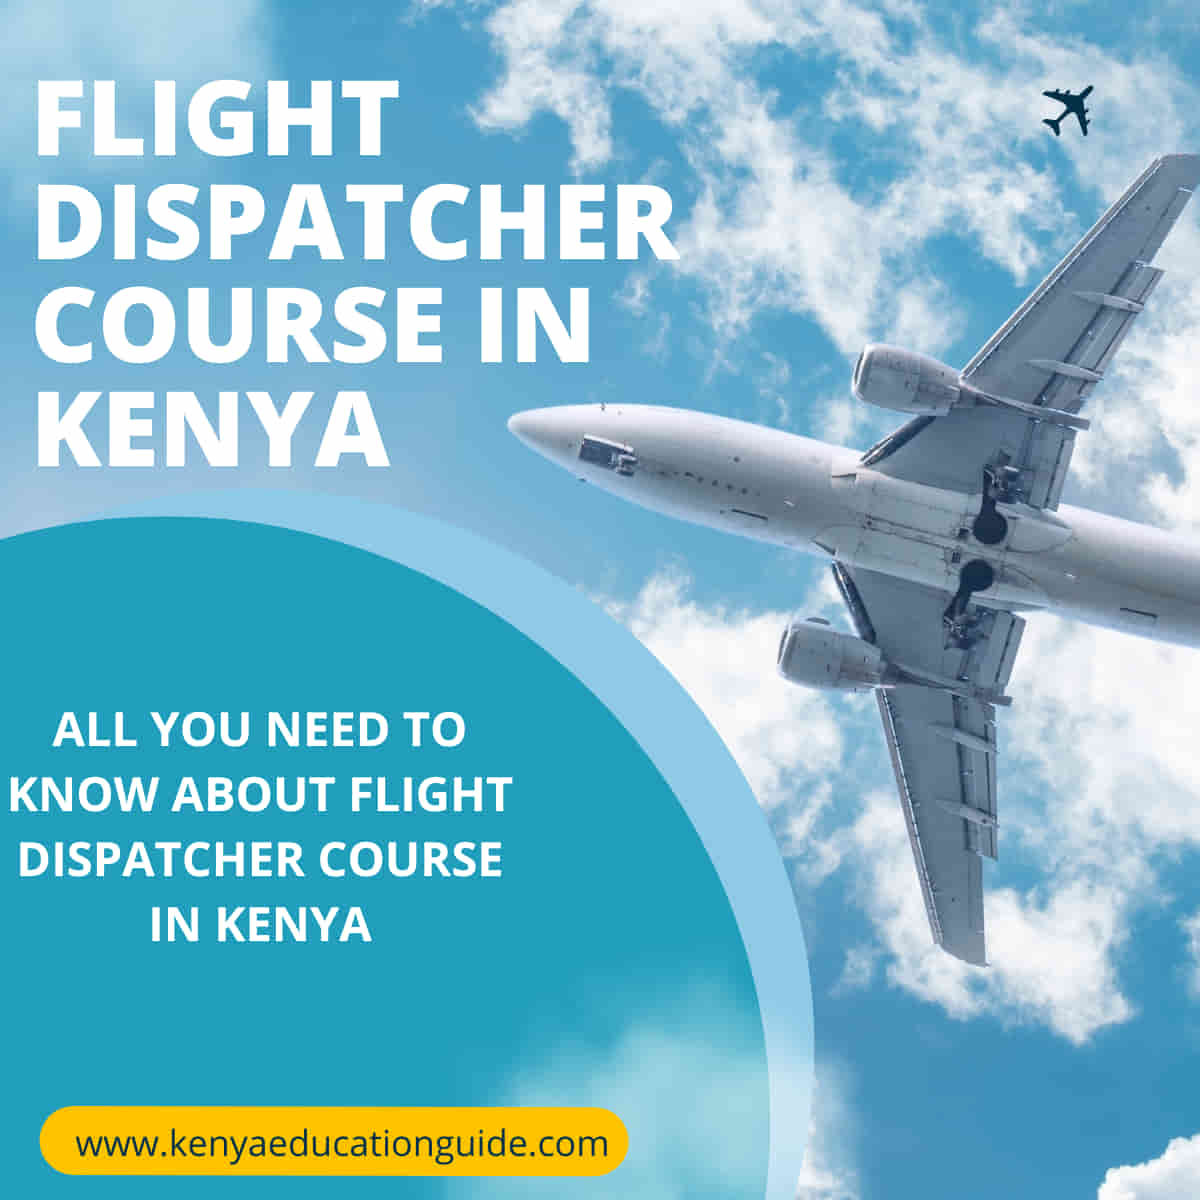 Flight dispatcher course in Kenya